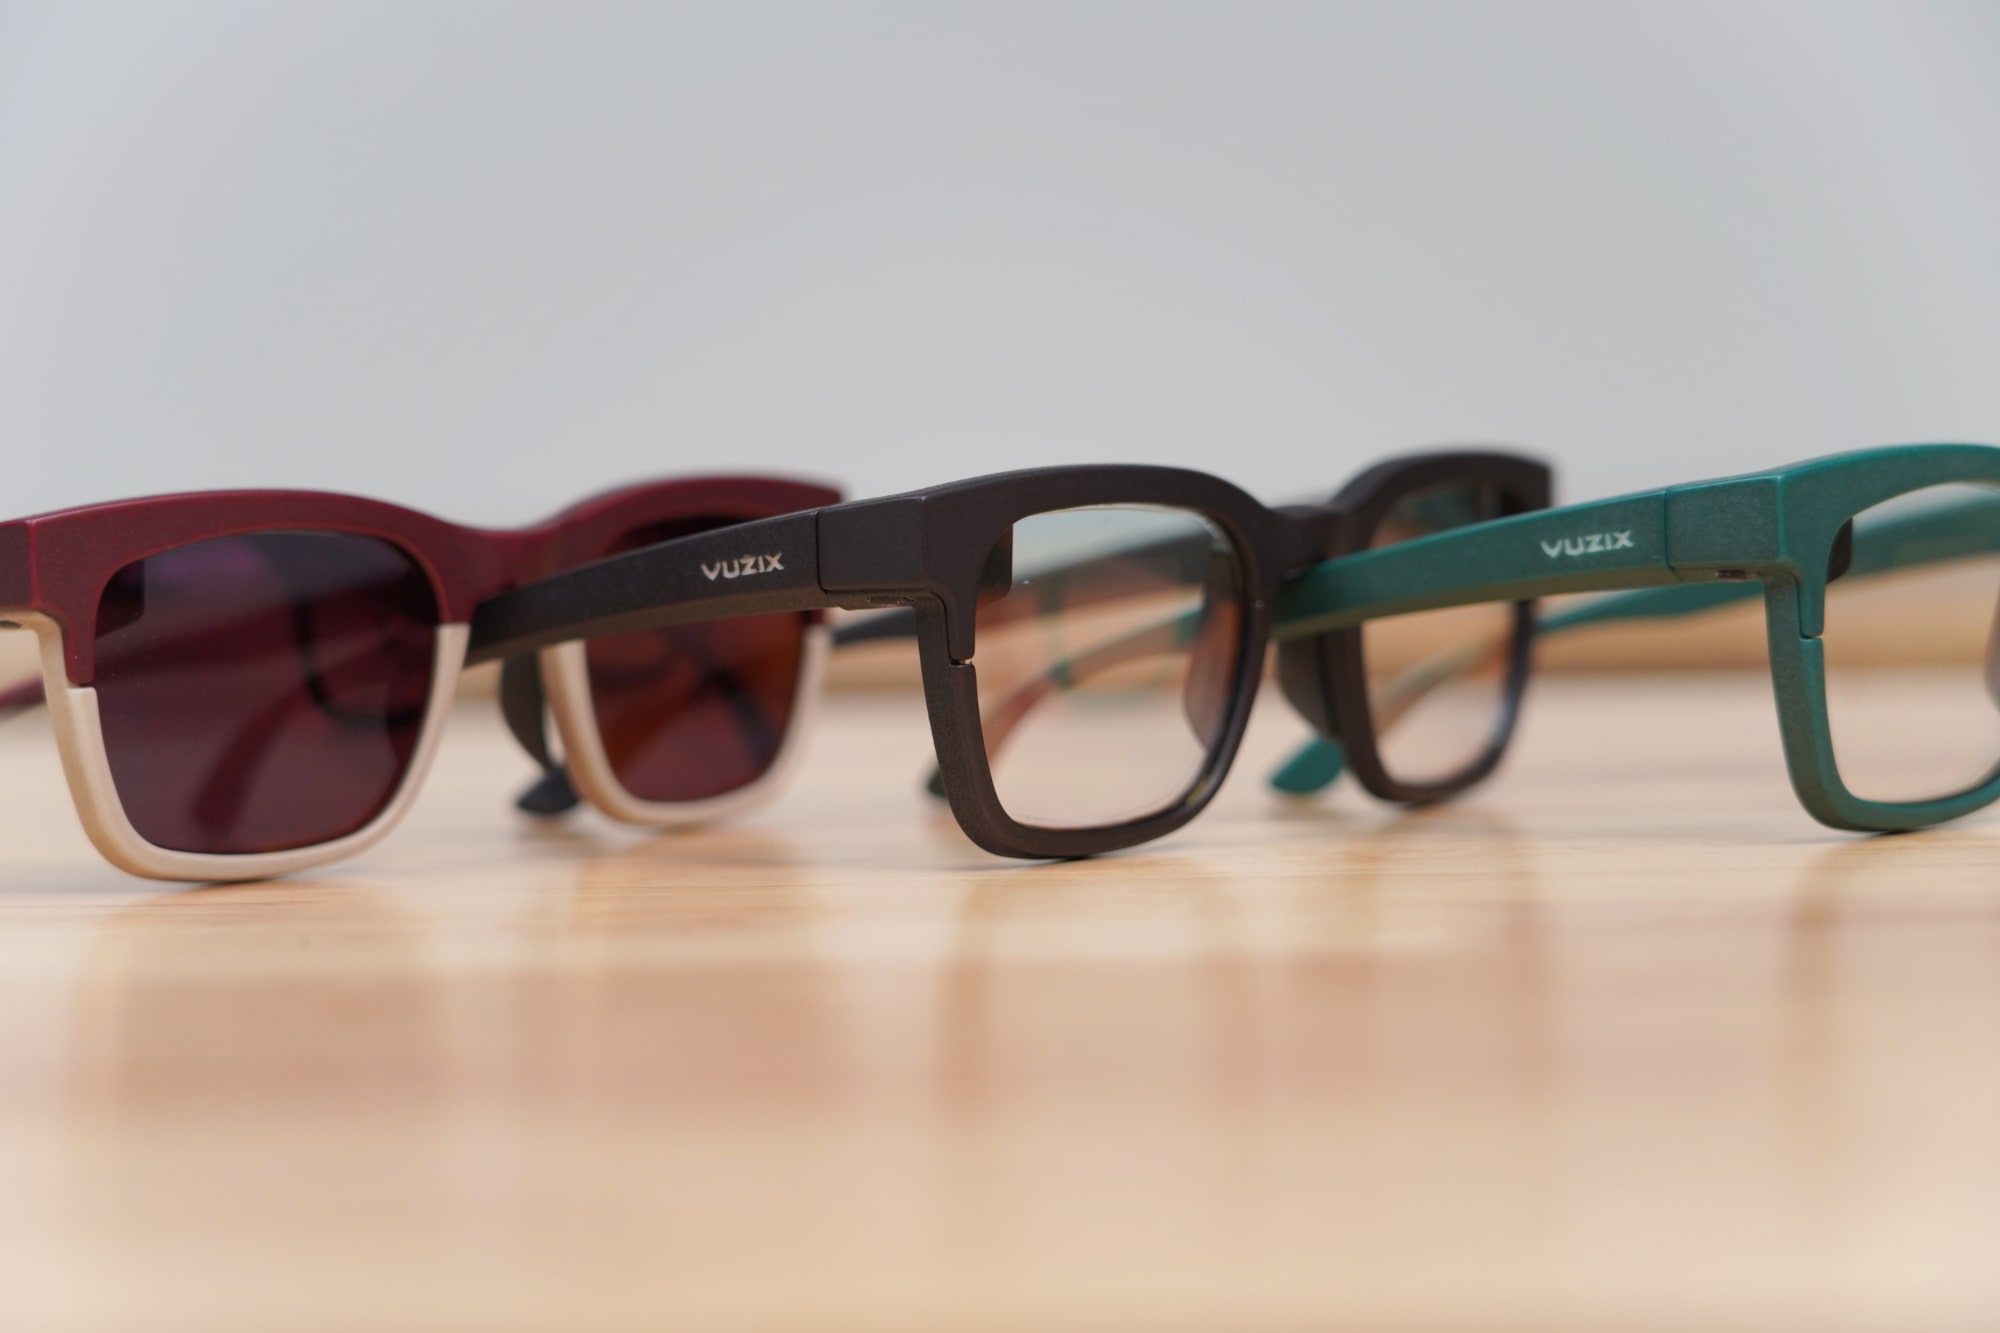 Os wearables Vuzix AR são notavelmente finos, como óculos comuns.